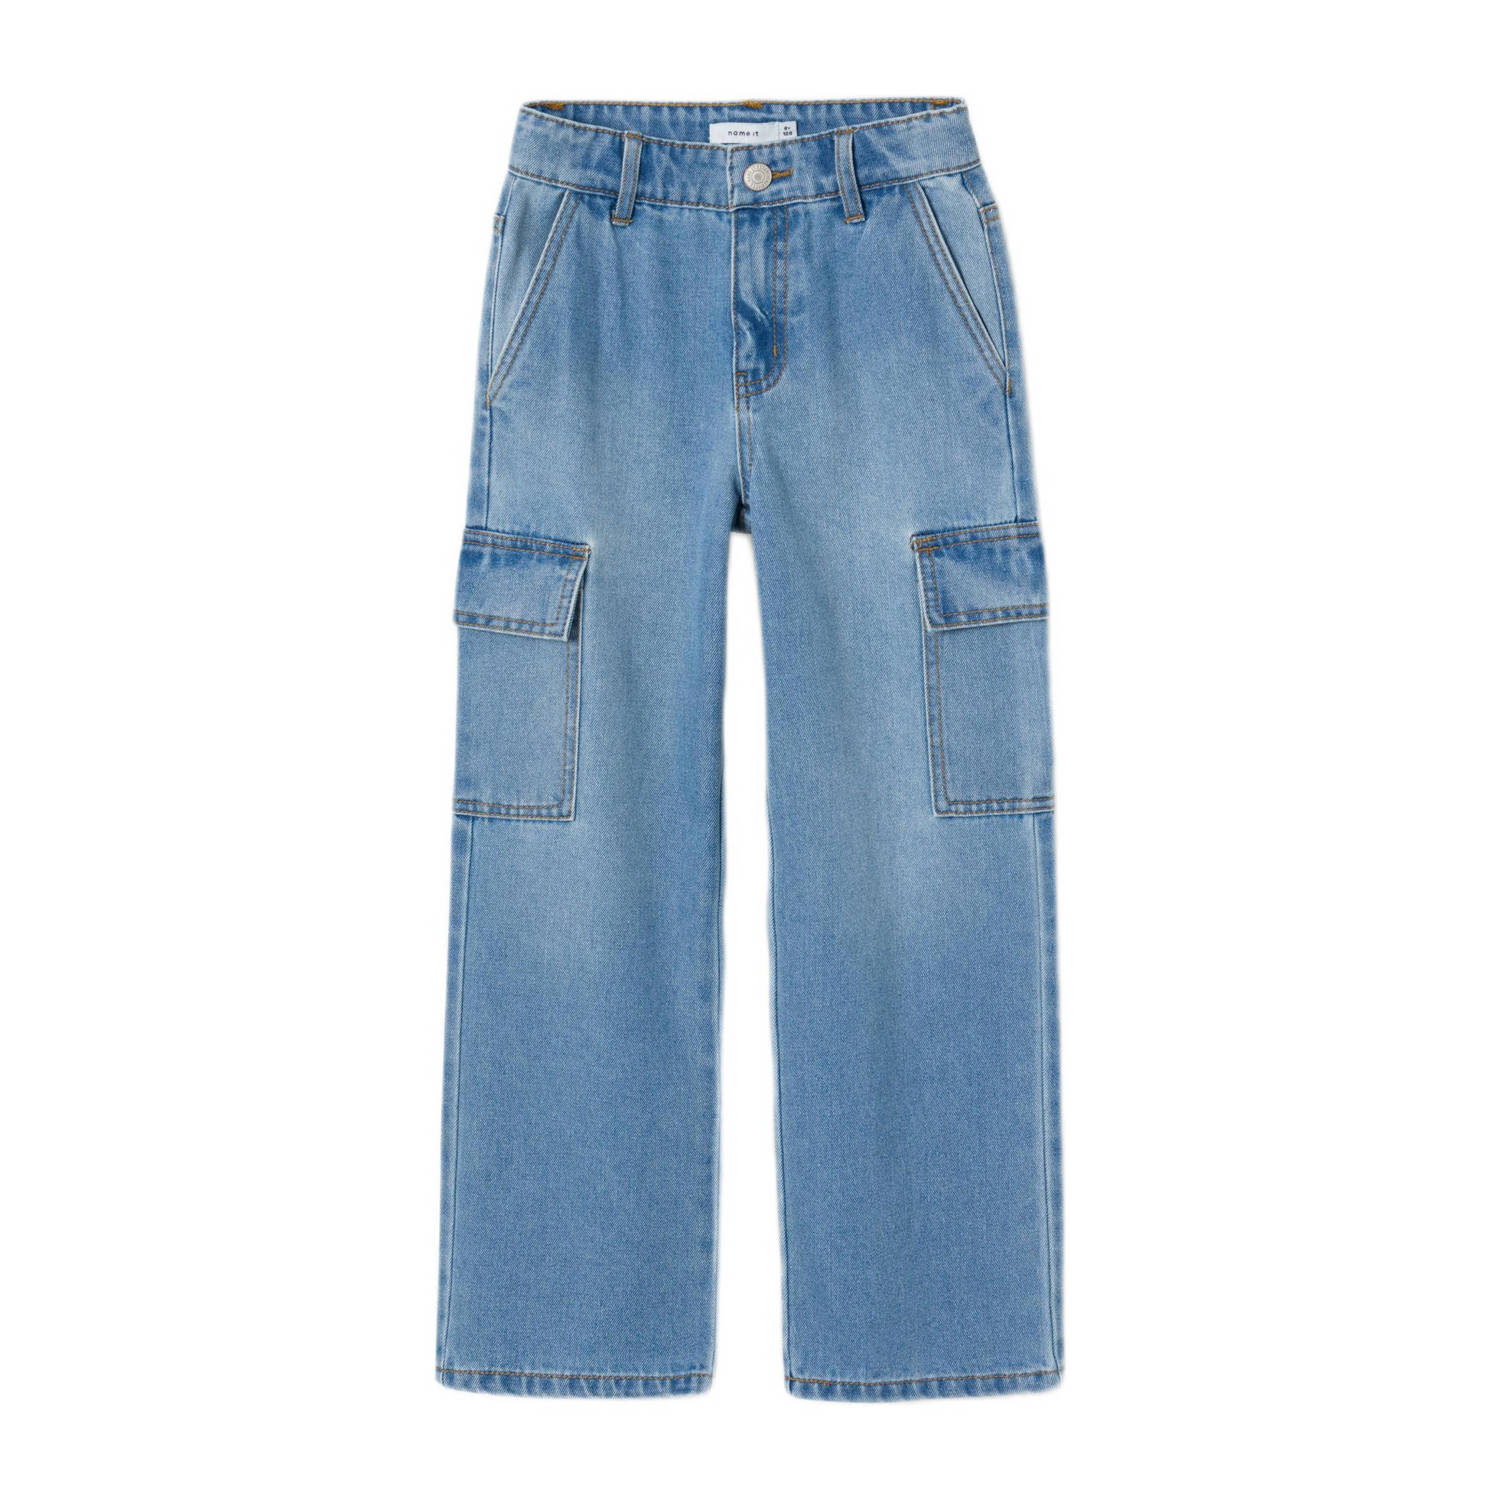 Name it KIDS wide leg jeans NKFROSE light blue denim Blauw Effen 116